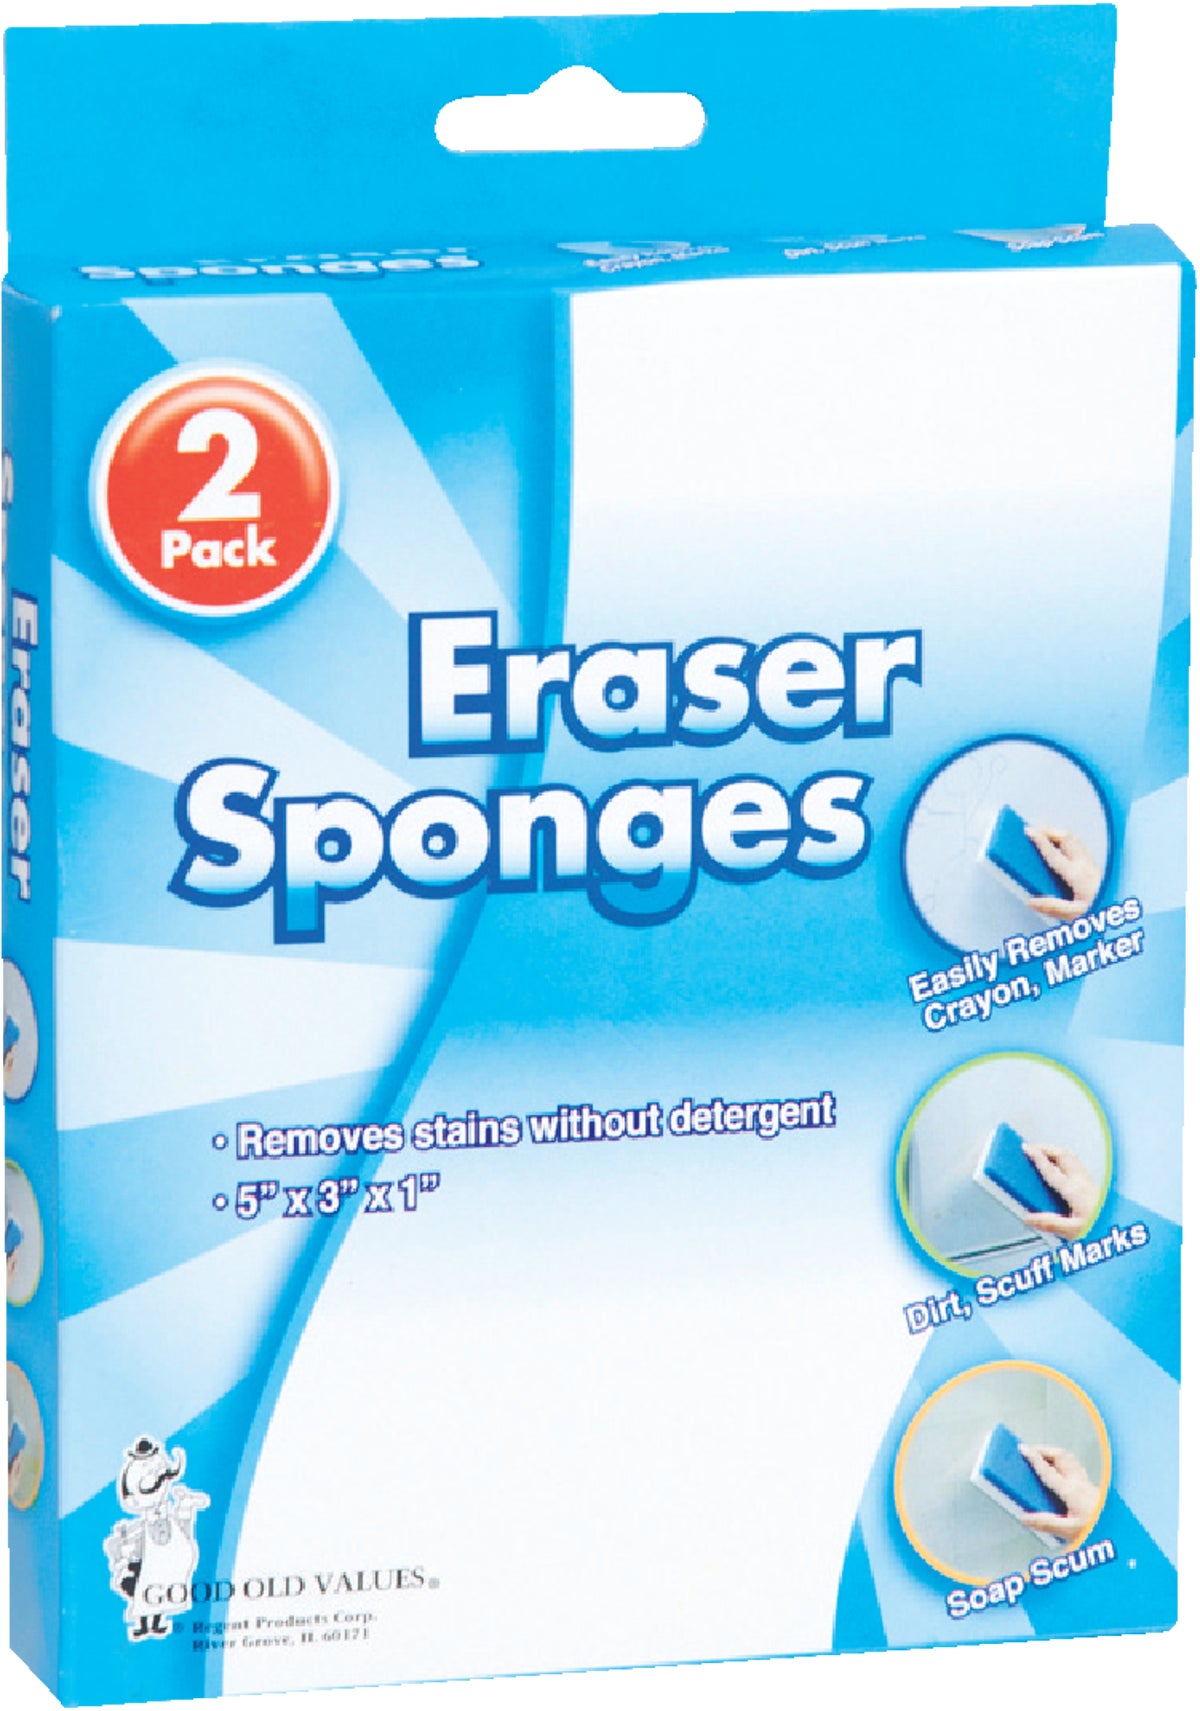 msds sheet for dg super eraser cleaning pad